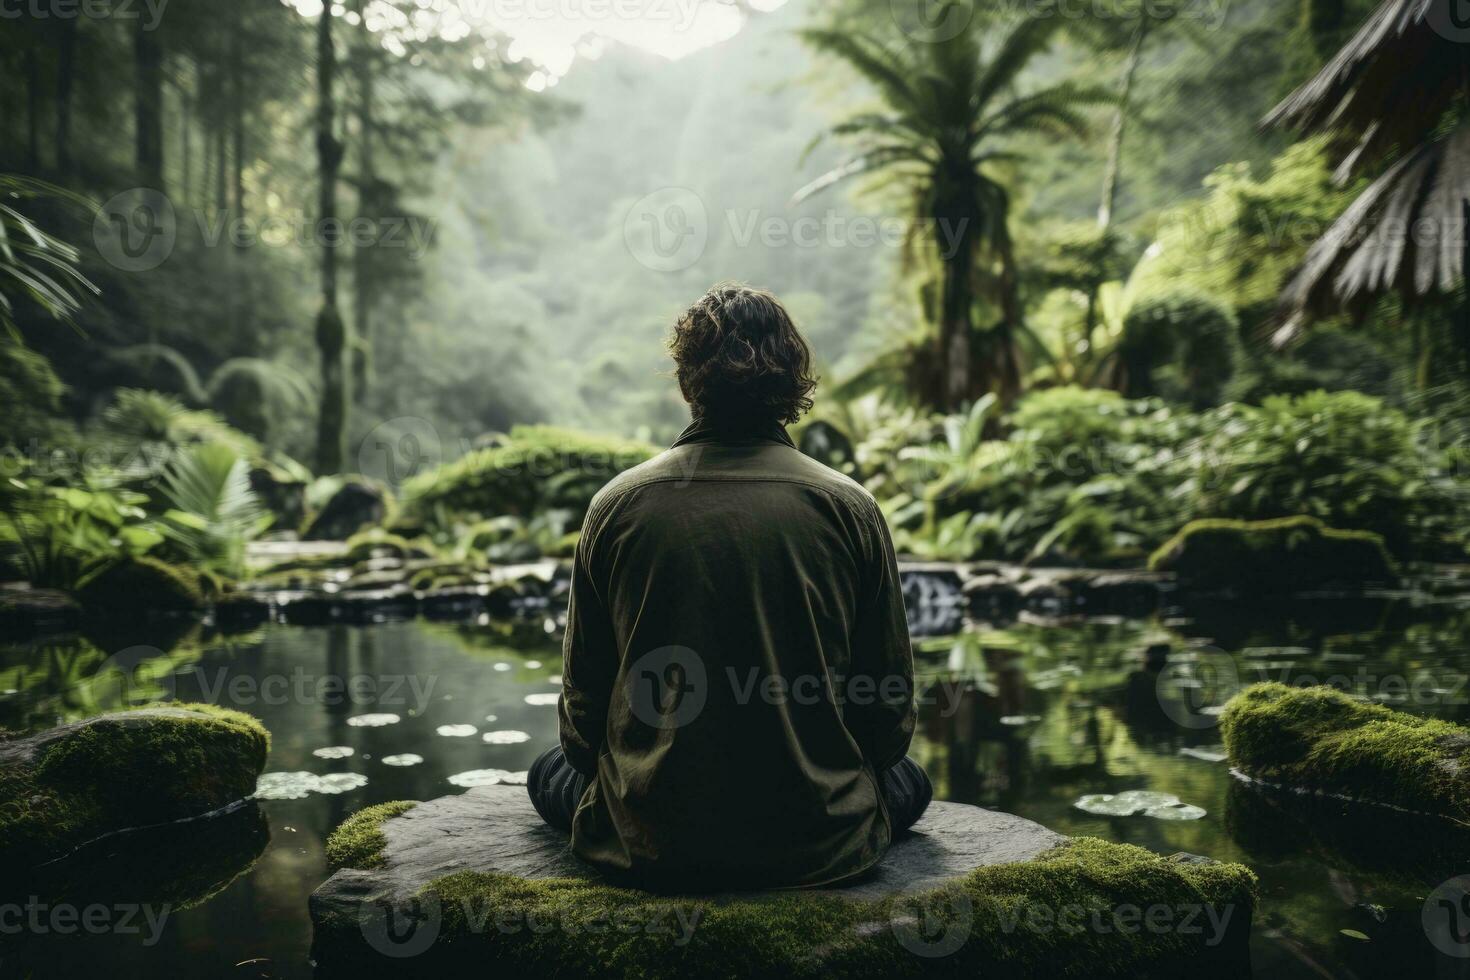 persoon mediteren rustig temidden van natuur gedurende opmerkzaamheid gebaseerd cognitief behandeling sessie foto